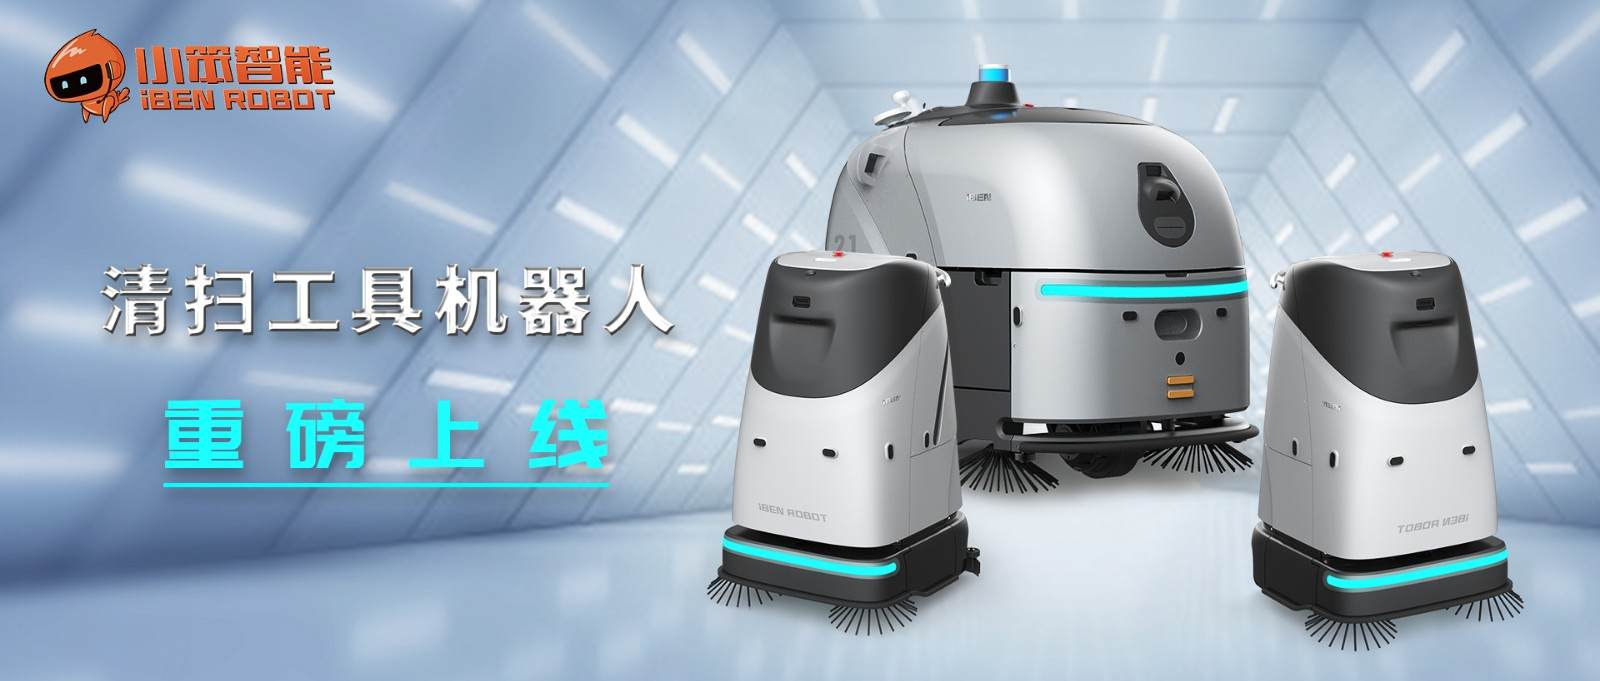 小笨智能重磅推出商用清扫机器人 开启智能清扫新时代